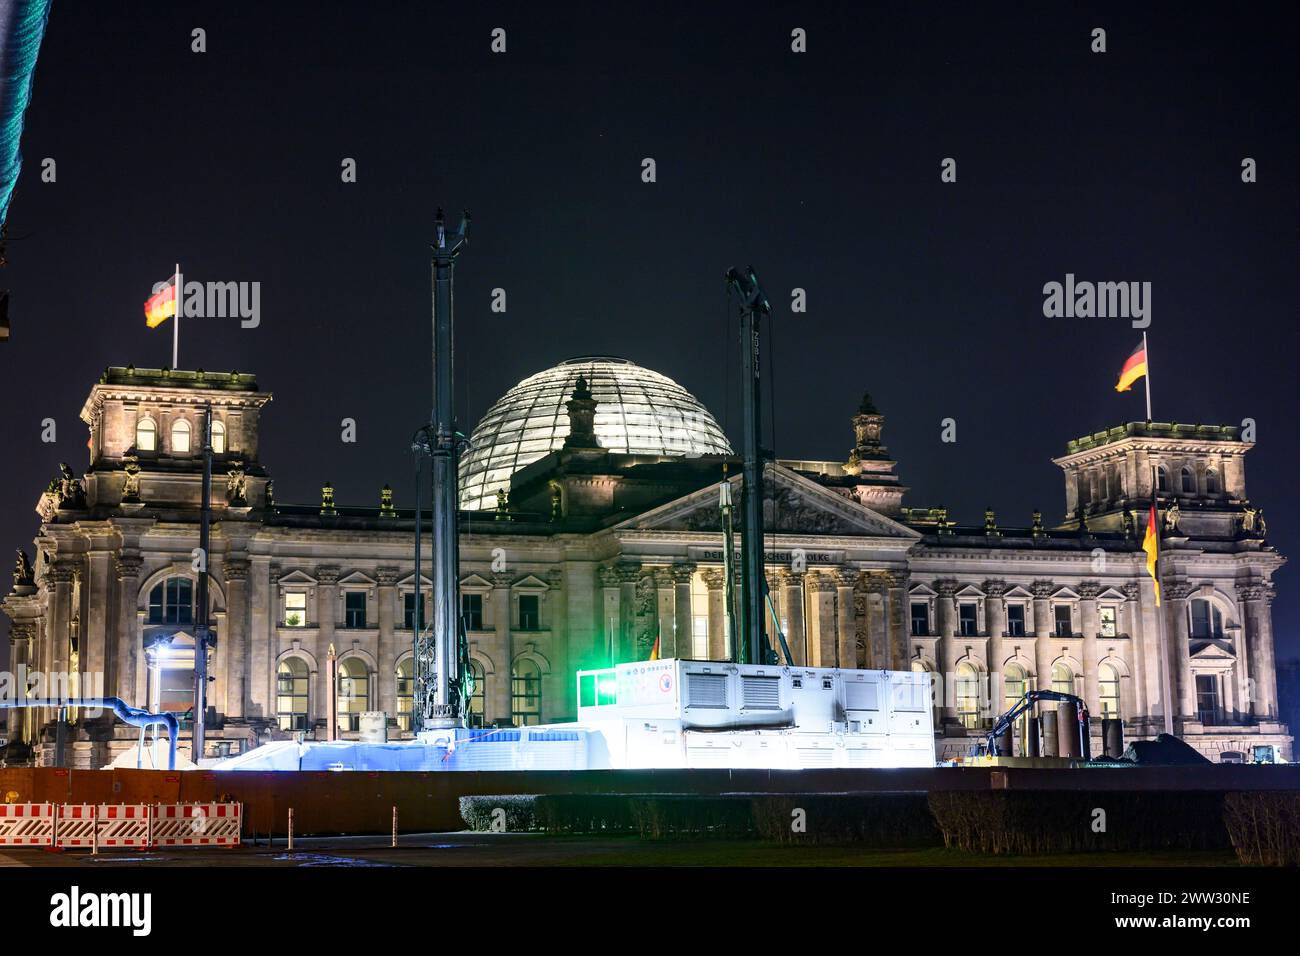 Der Reichstag, Bundestag - Baustelle, am Abend - Lichter der Grossstadt  Berlinbilder - Strassen - Aufnahmen  24.02. 2024, Foto: Uwe Koch/HMB Media/Al Stock Photo